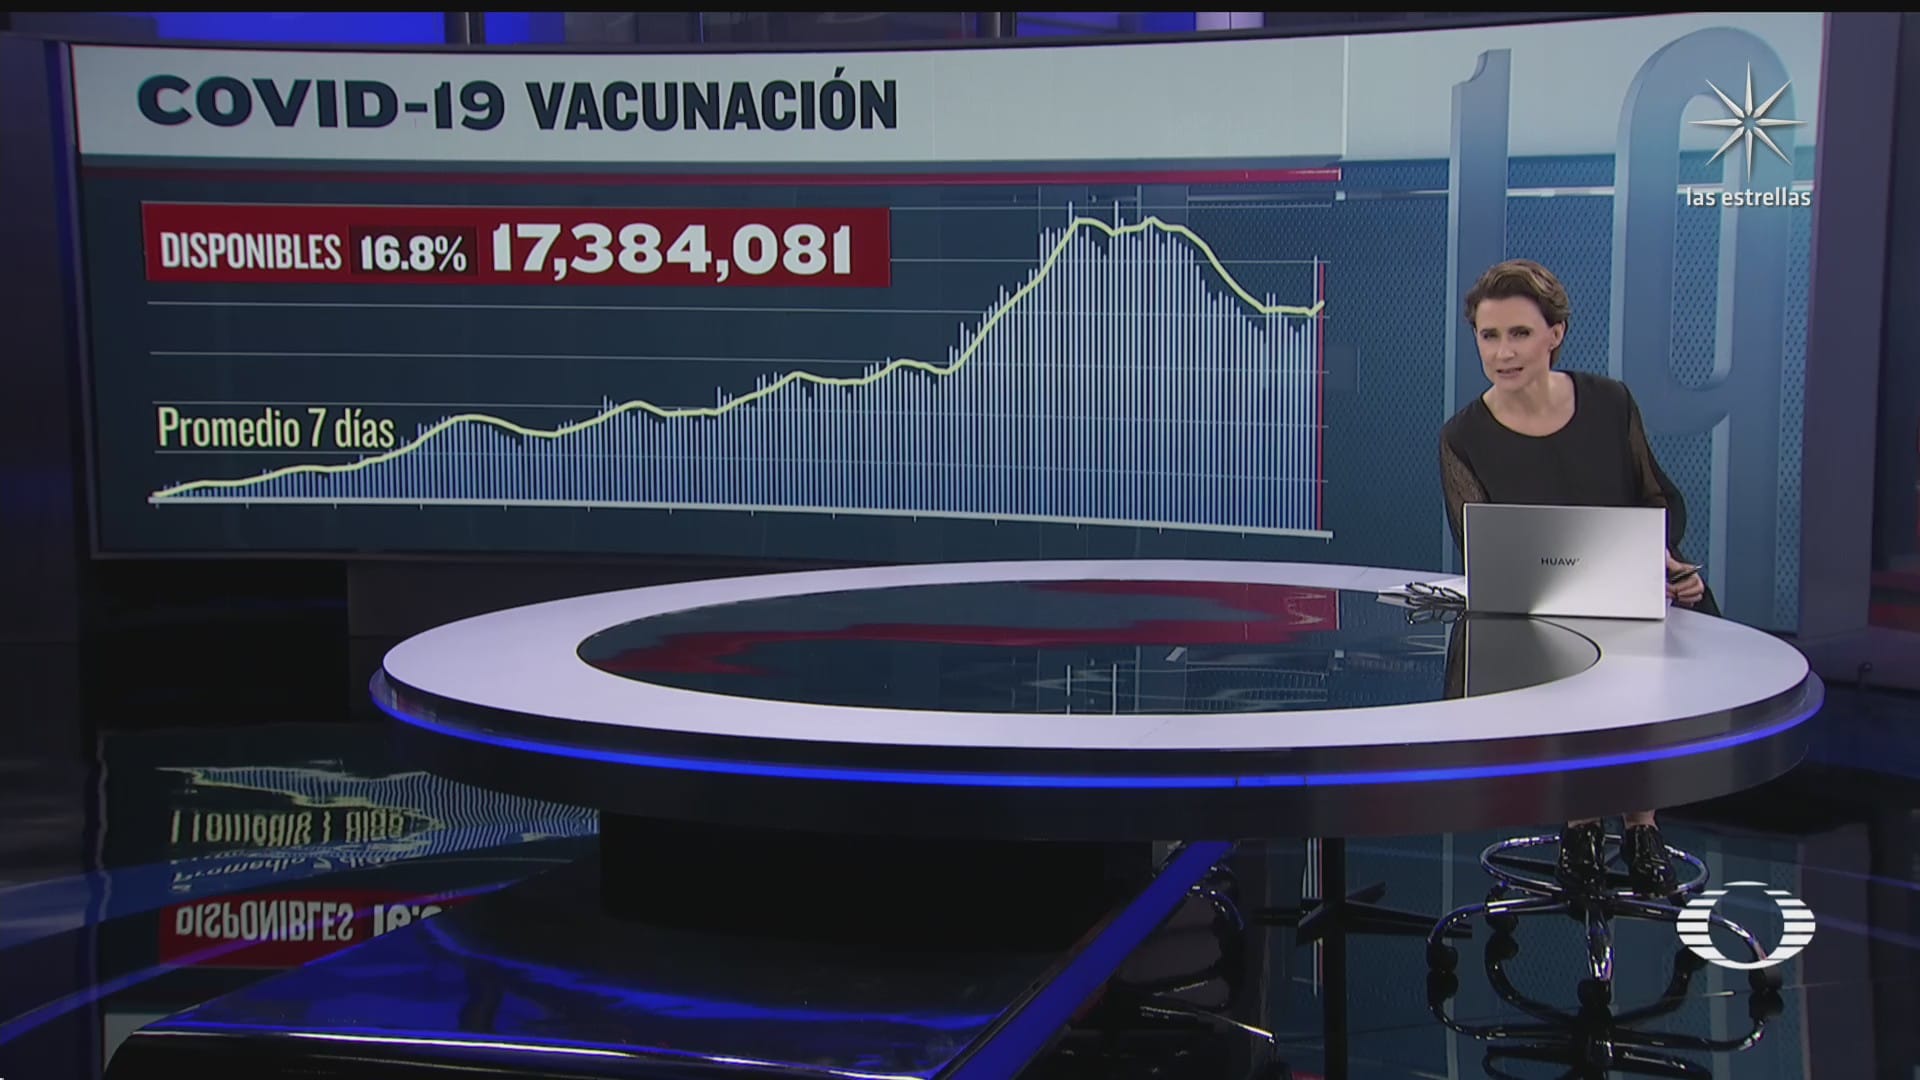 Más de 17 millones de vacunas disponibles en México